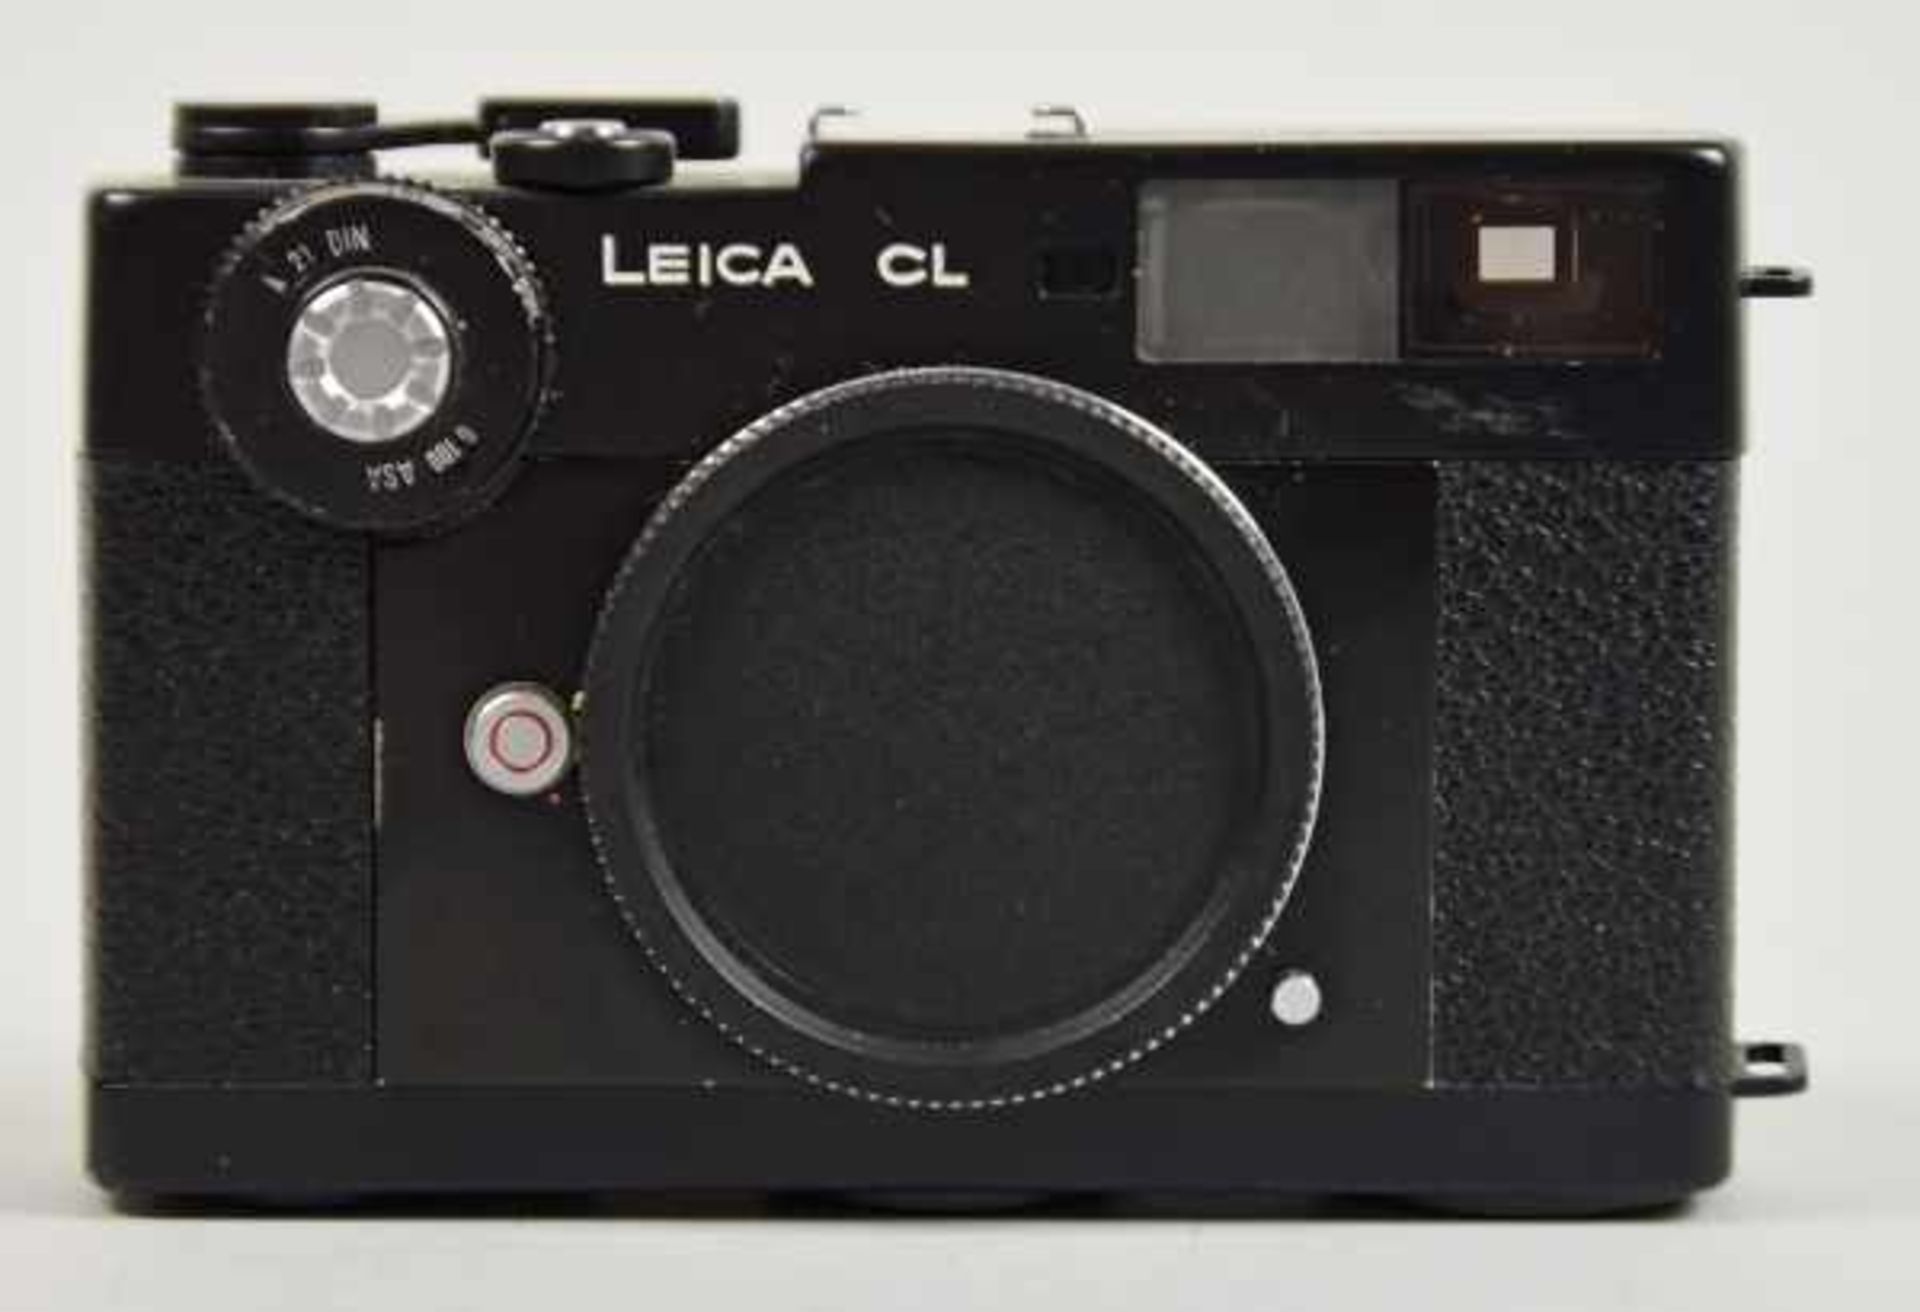 LEICA FOTOAPPARAT Typ CL, Nr.1310940, BJ 1973-76, kein Objektiv, sehr guter Zustand,